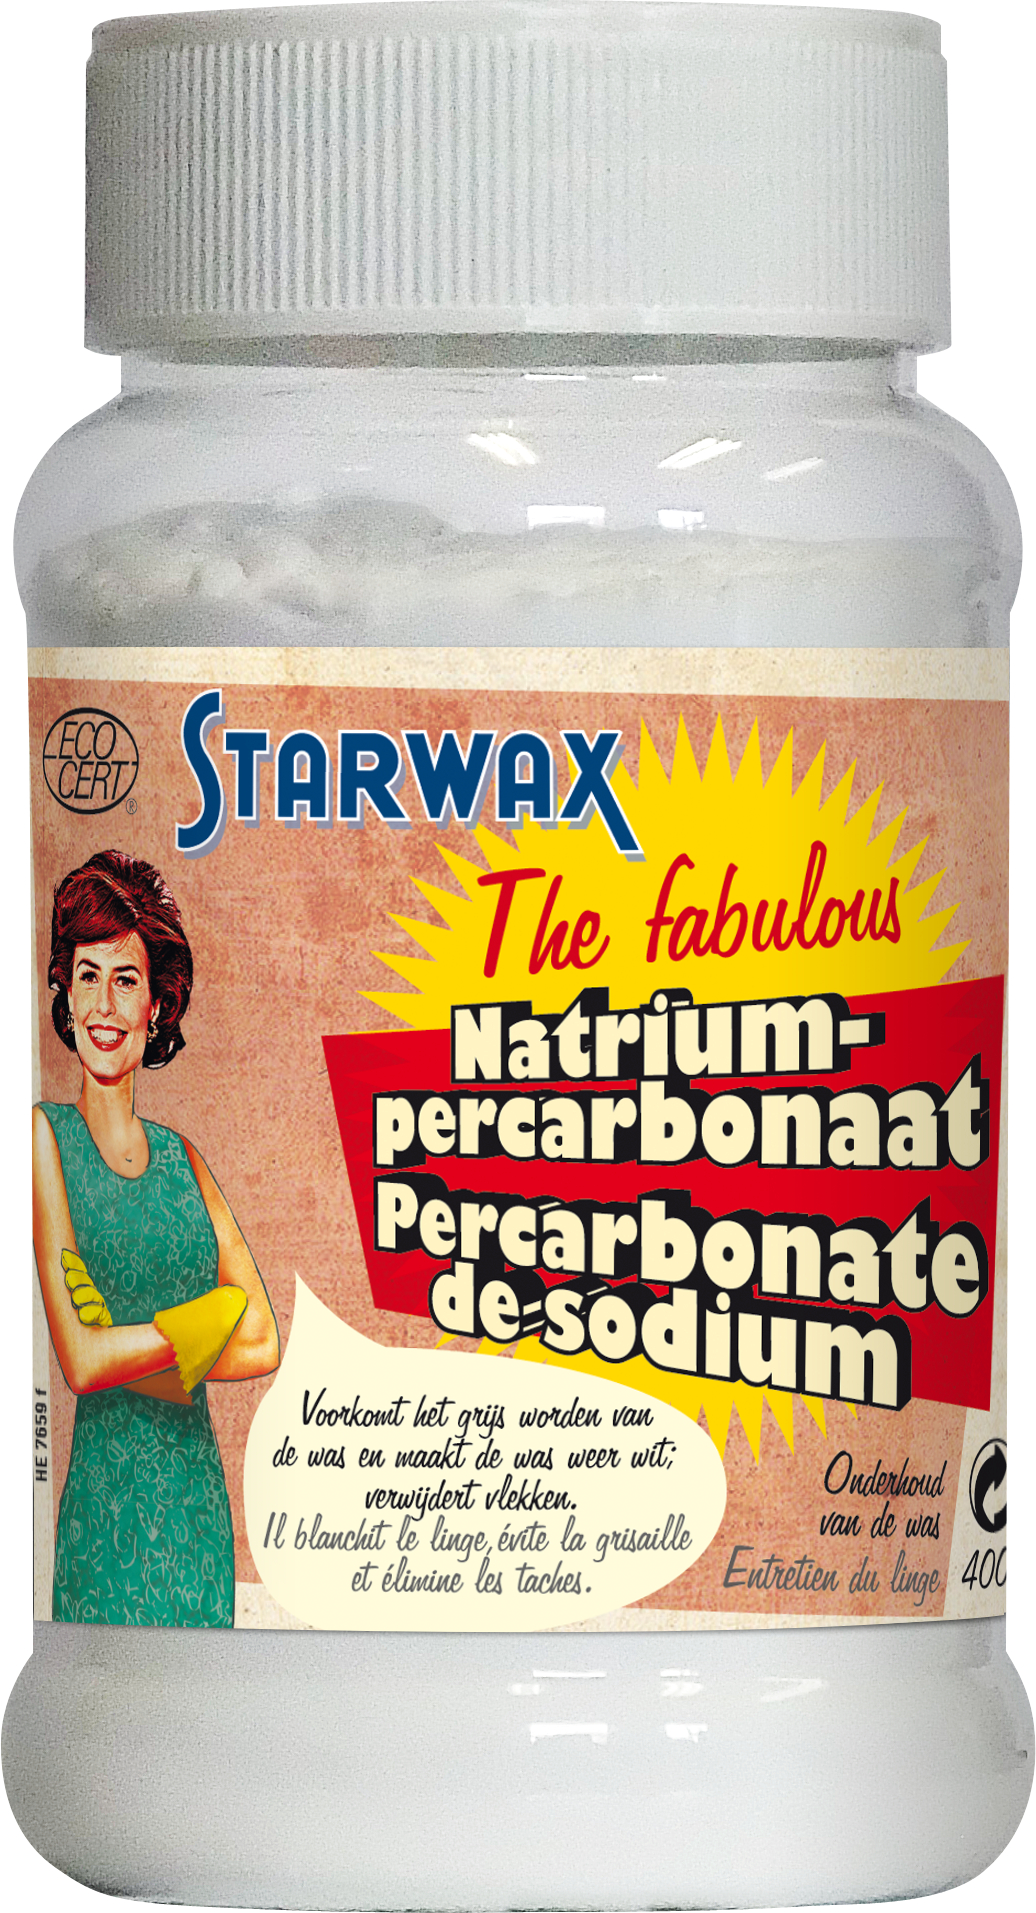 percarbonate de sodium - 500 g - CLAIR au meilleur prix